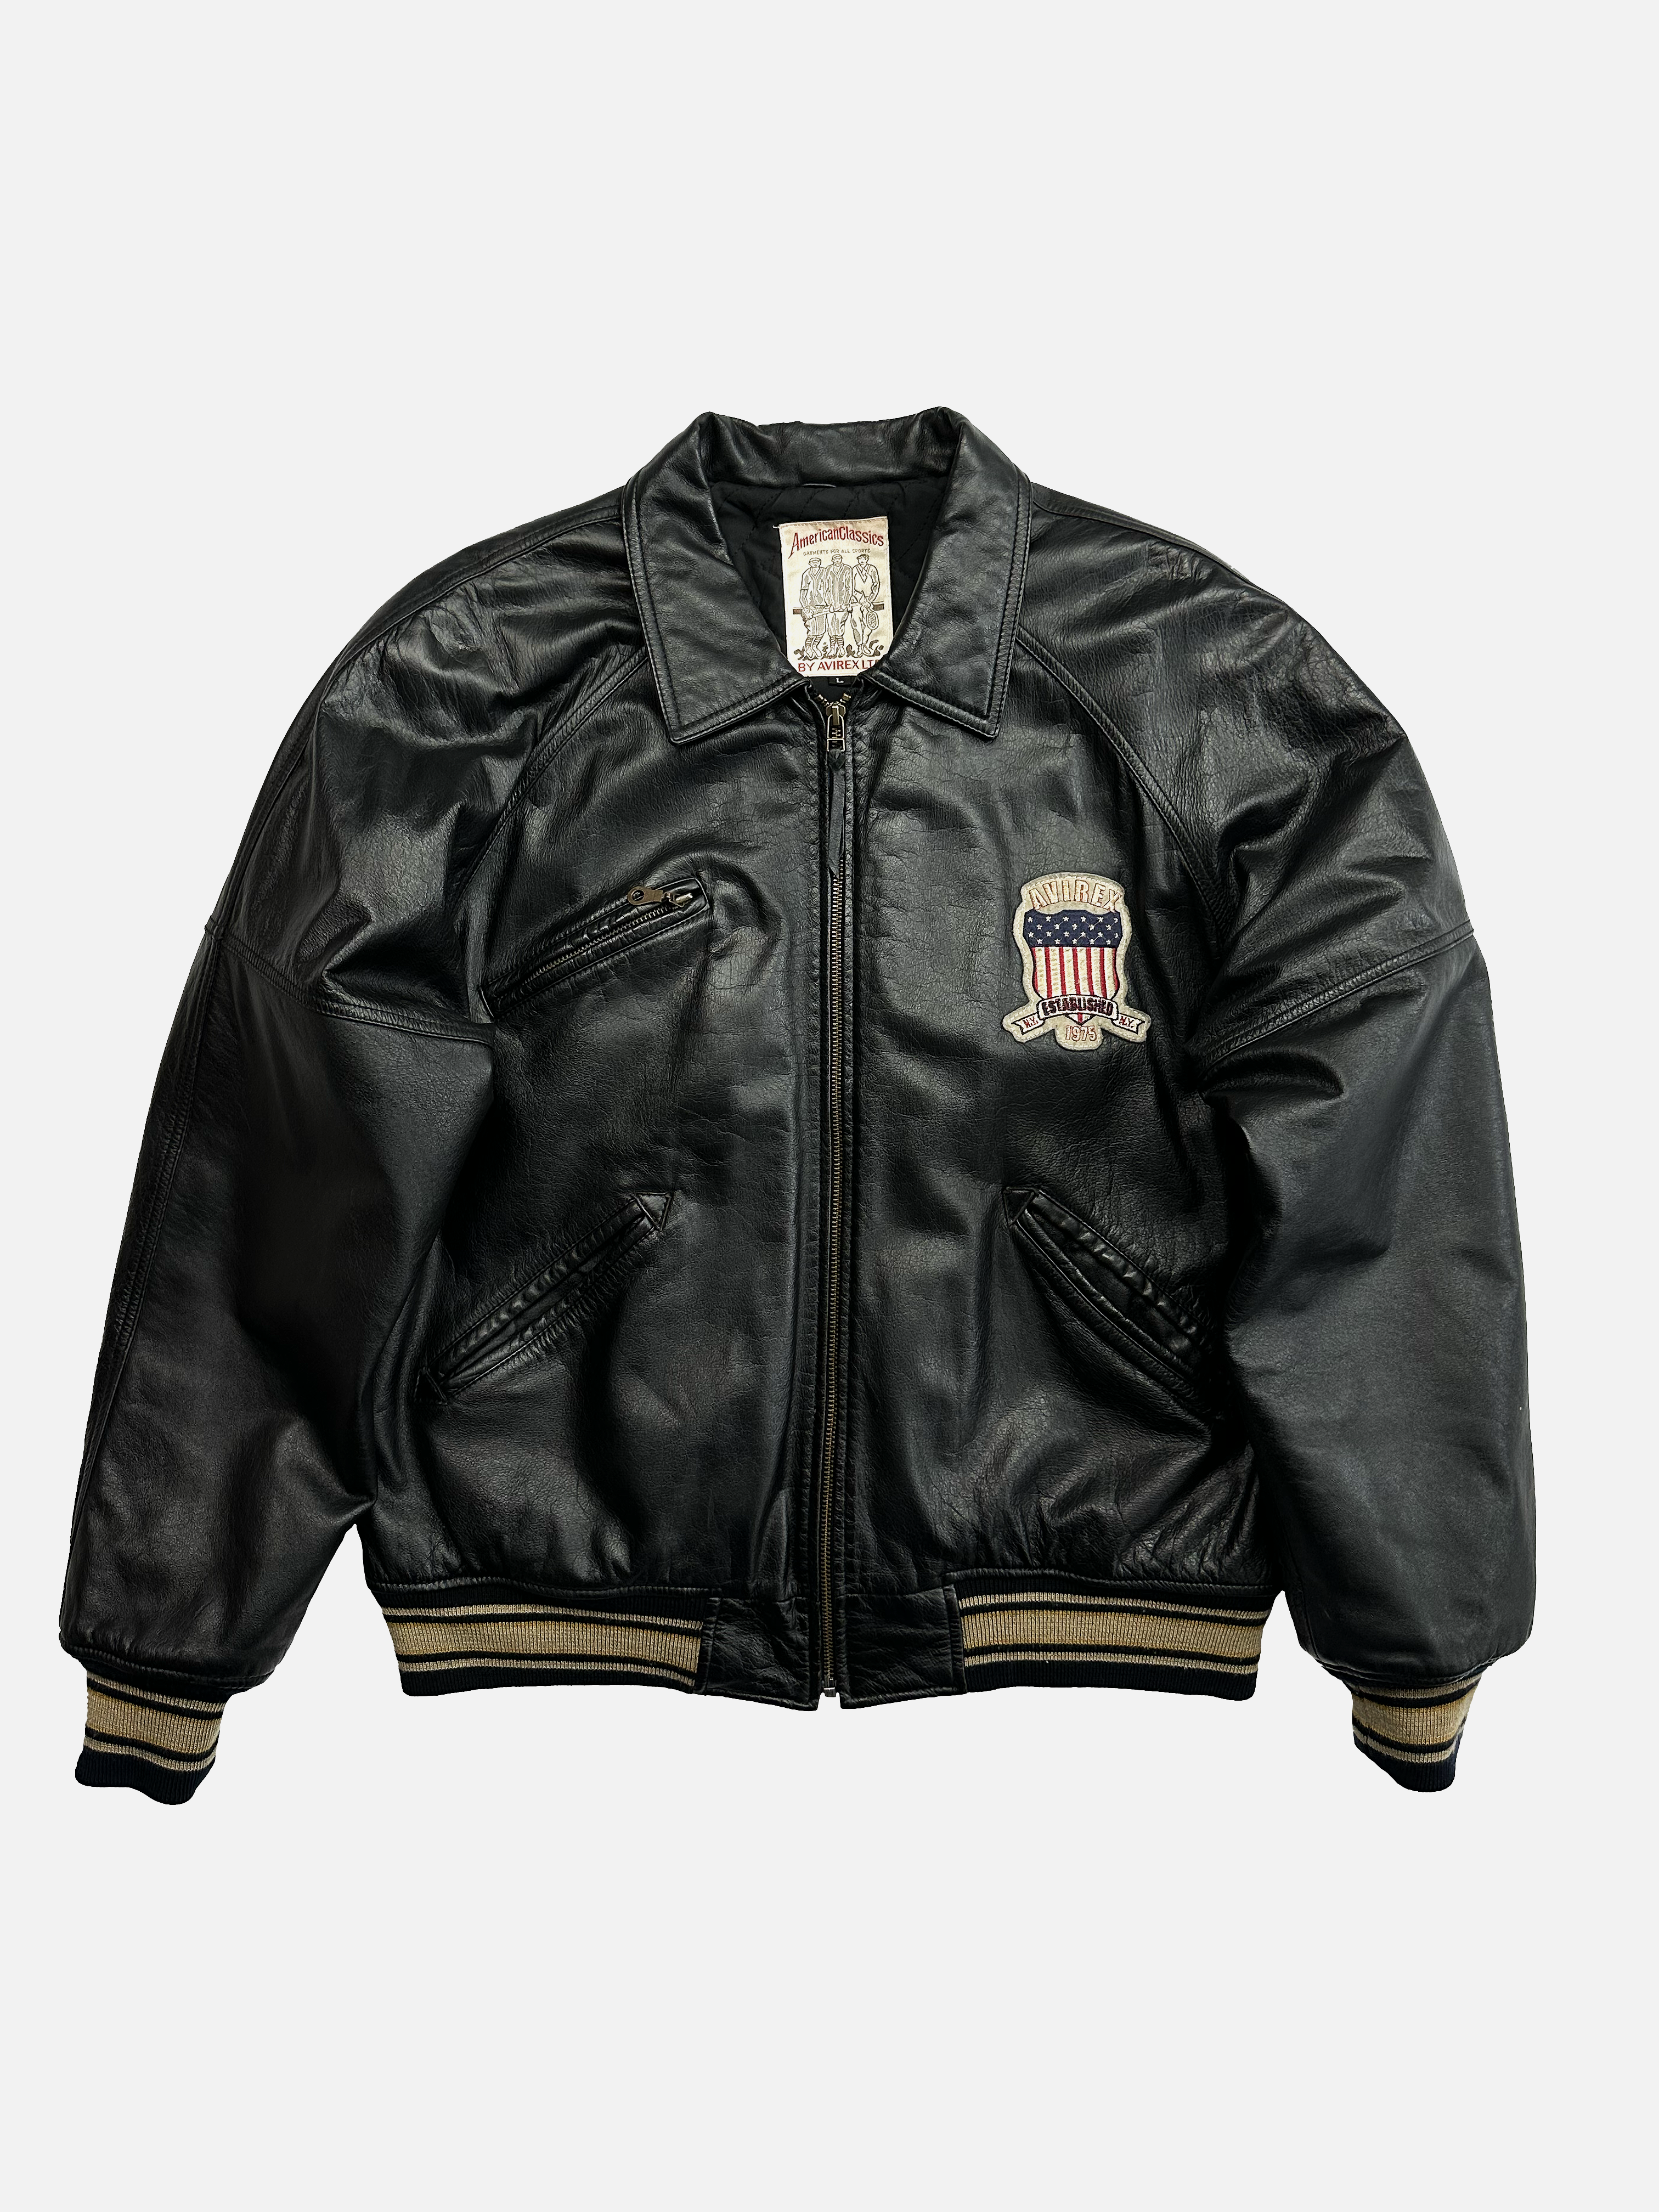 Avirex Black Leather Icon Jacket 90's